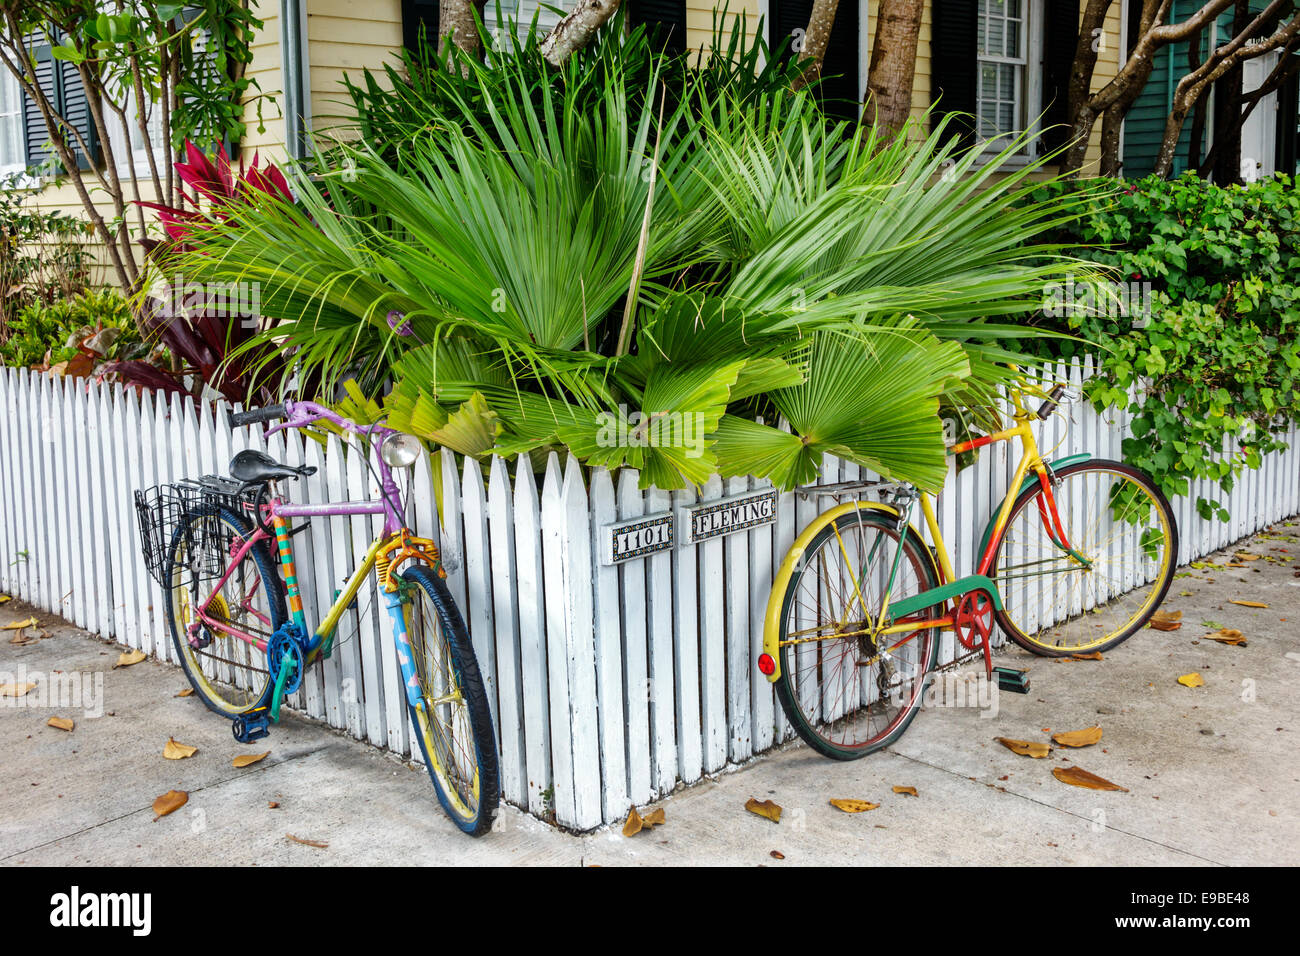 Key West Florida, Keys Fleming Street, Haushäuser Häuser Häuser Häuser Residenz, Haus, private Residenz, weißer Zaun, bunt, Fahrräder, tropisches lan Stockfoto